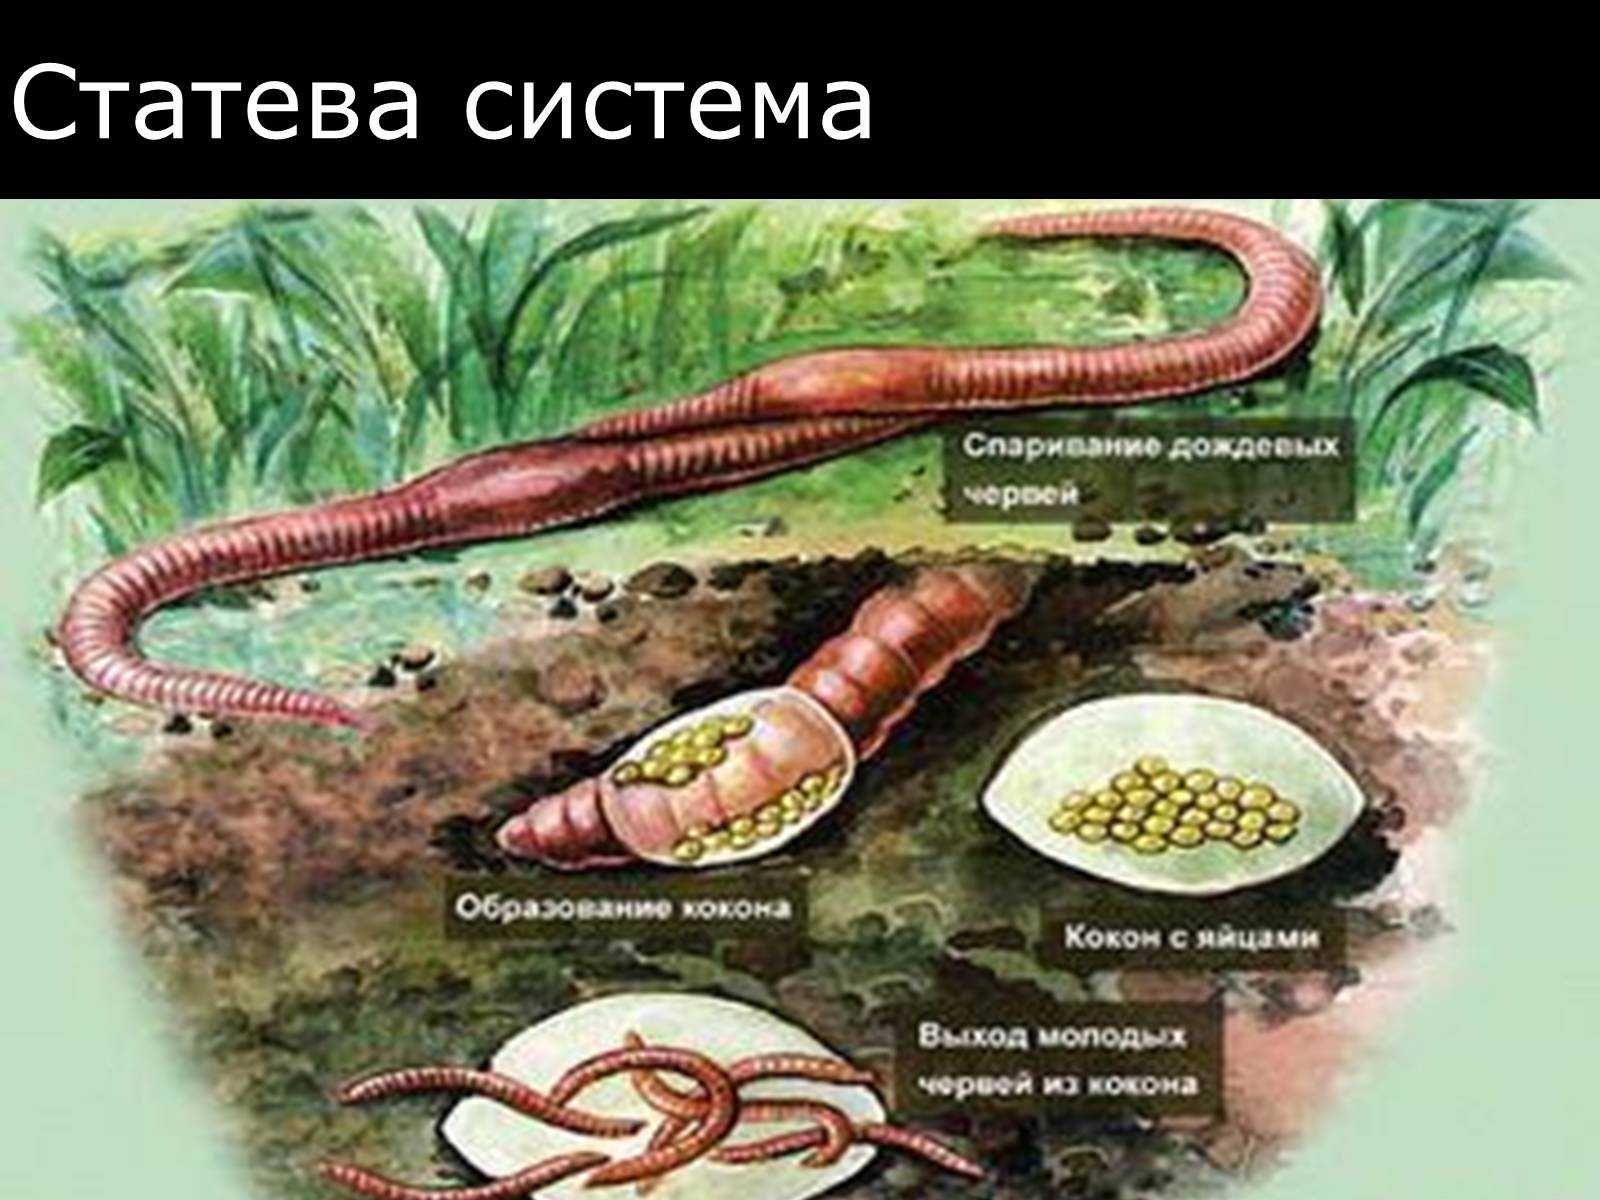 Как размножаются дождевые черви?